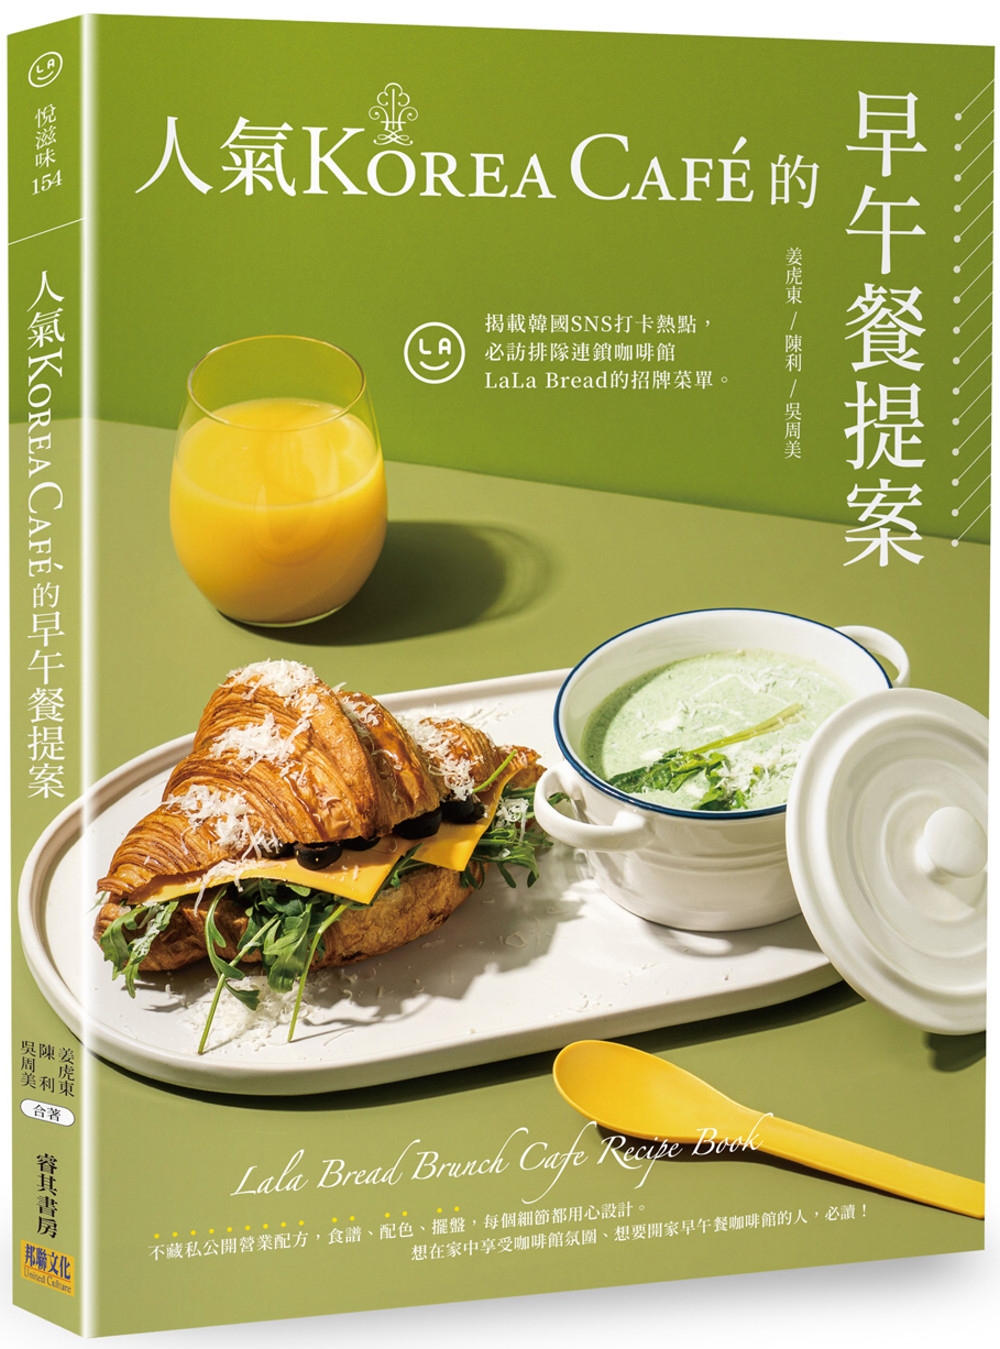 人氣Korea Café的早午餐提案